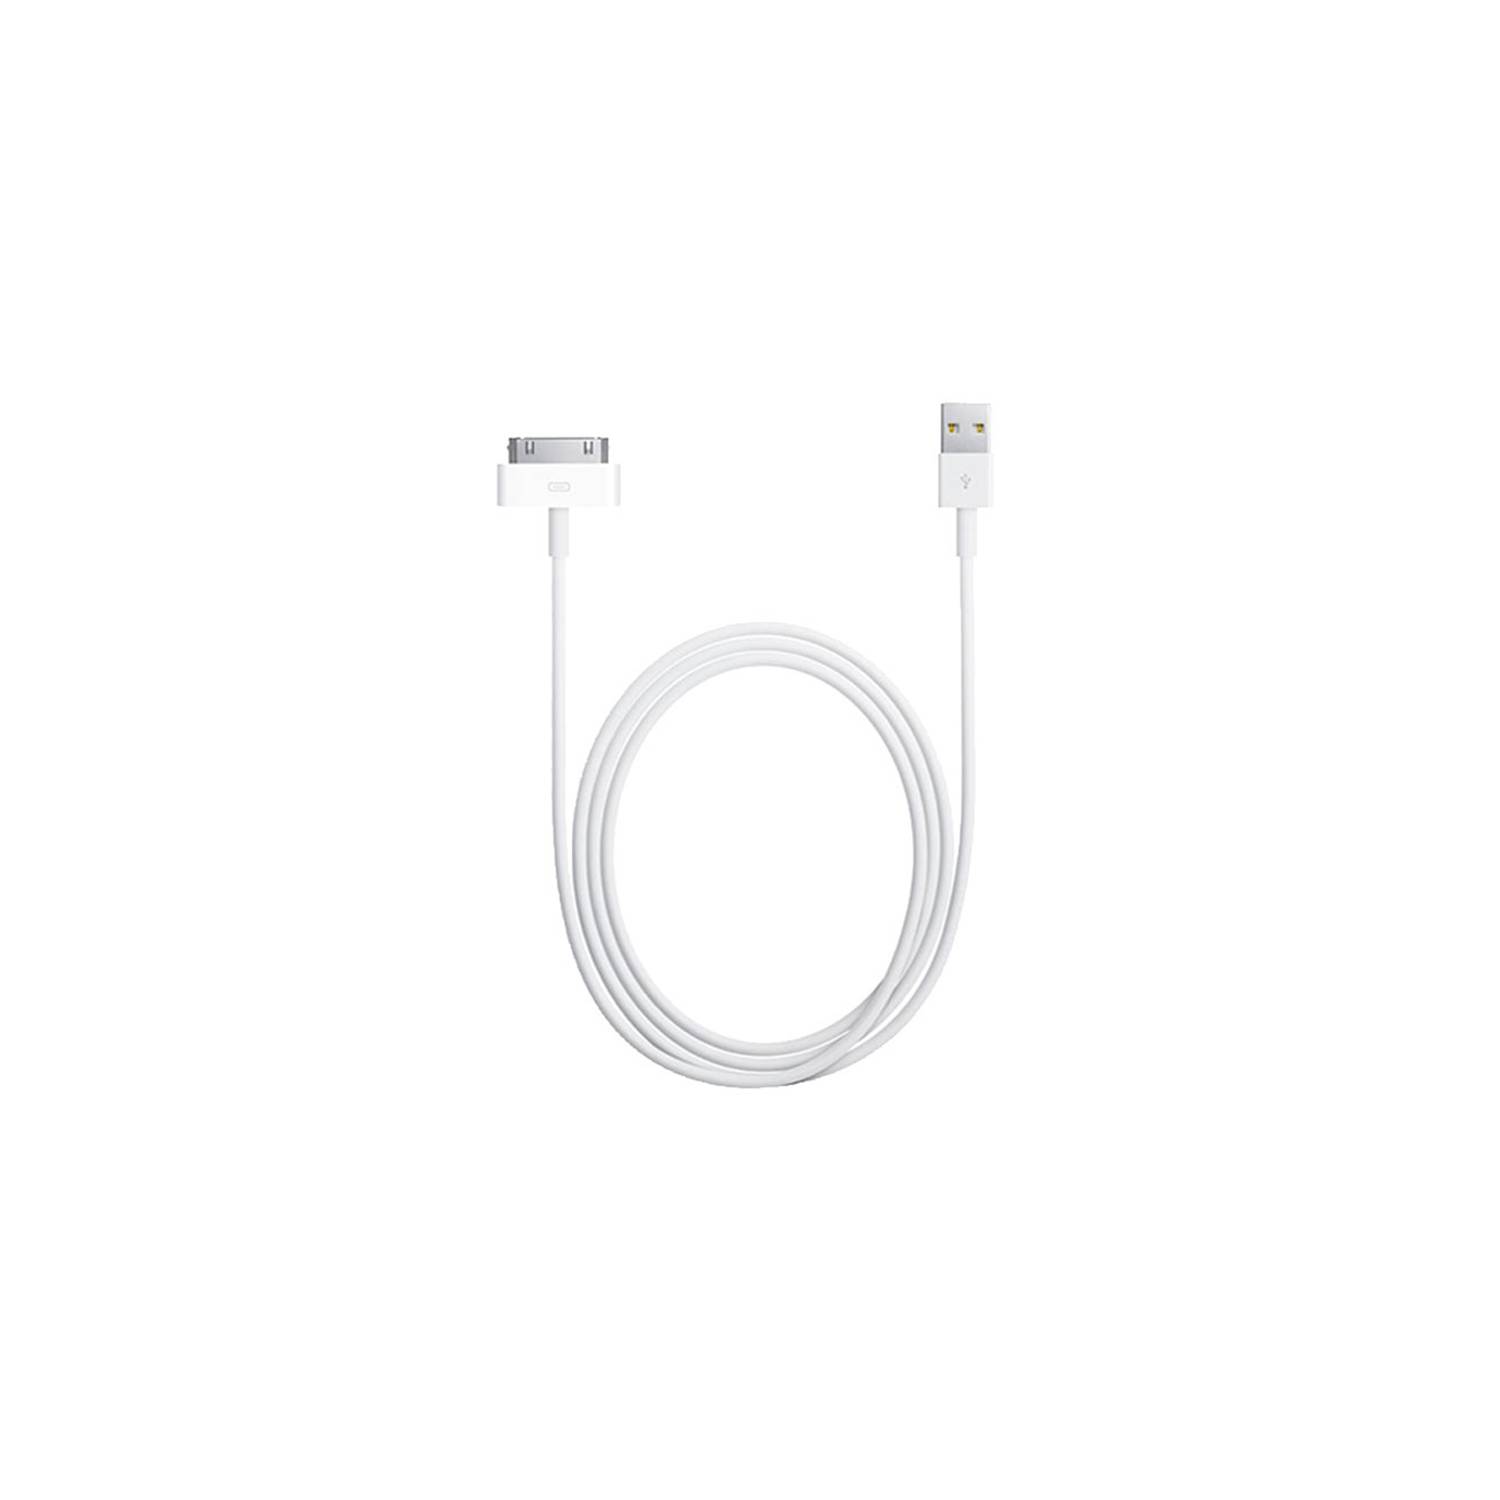 Cable de datos USB para iPad nuevo (iPad 3) / iPad 2 / iPad, iPhone 4 y 4S